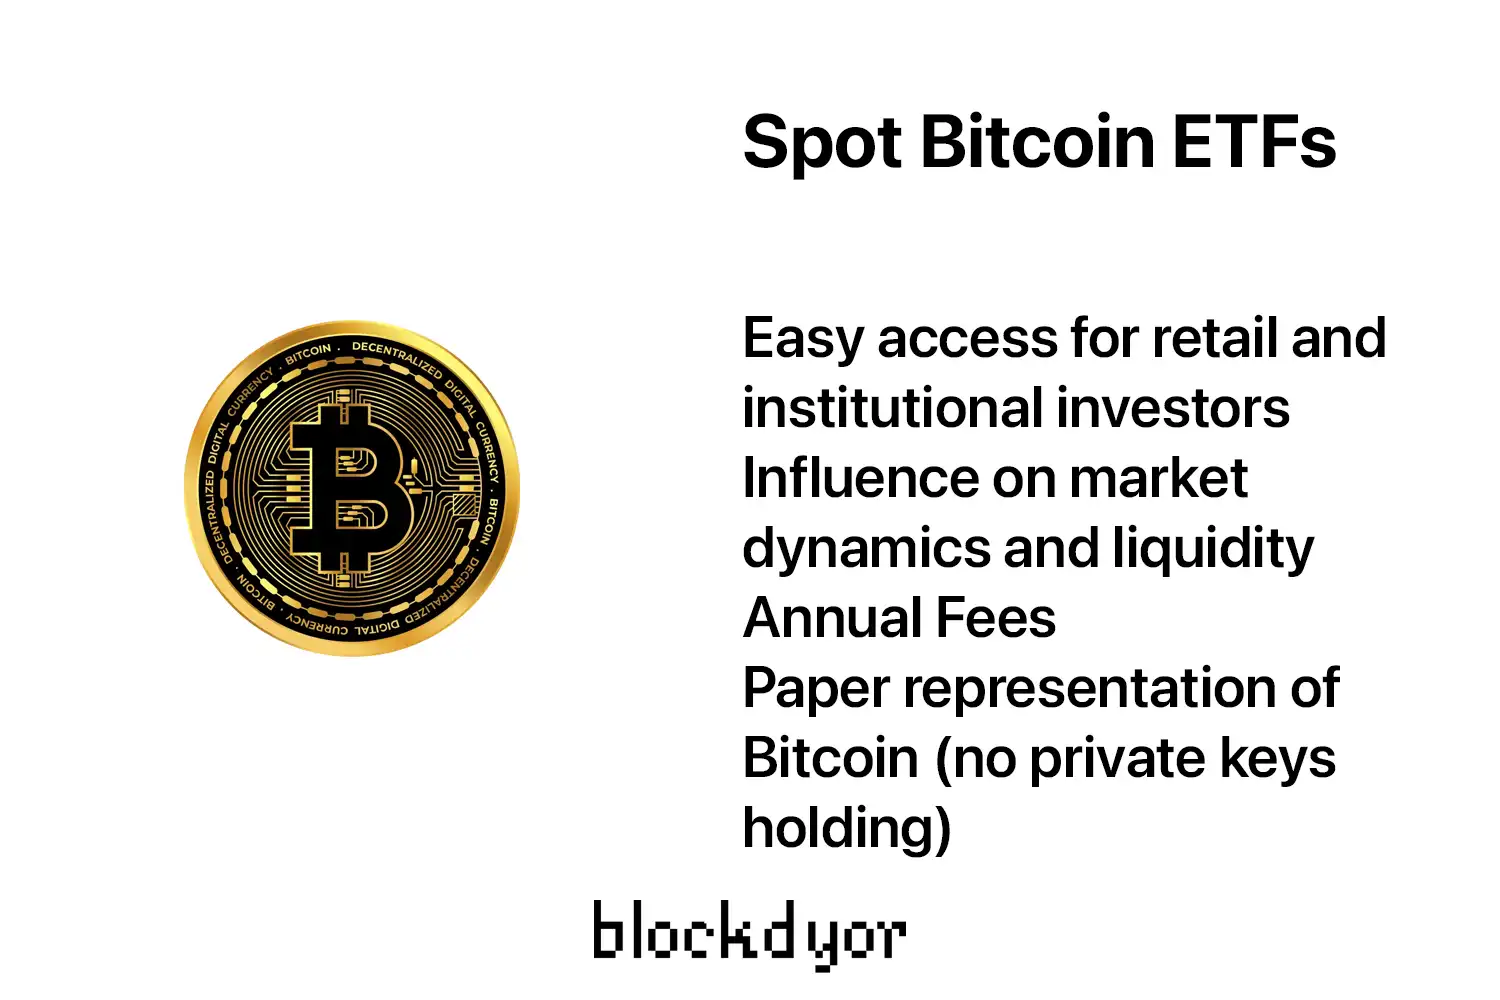 Spot Bitcoin ETFs Overview